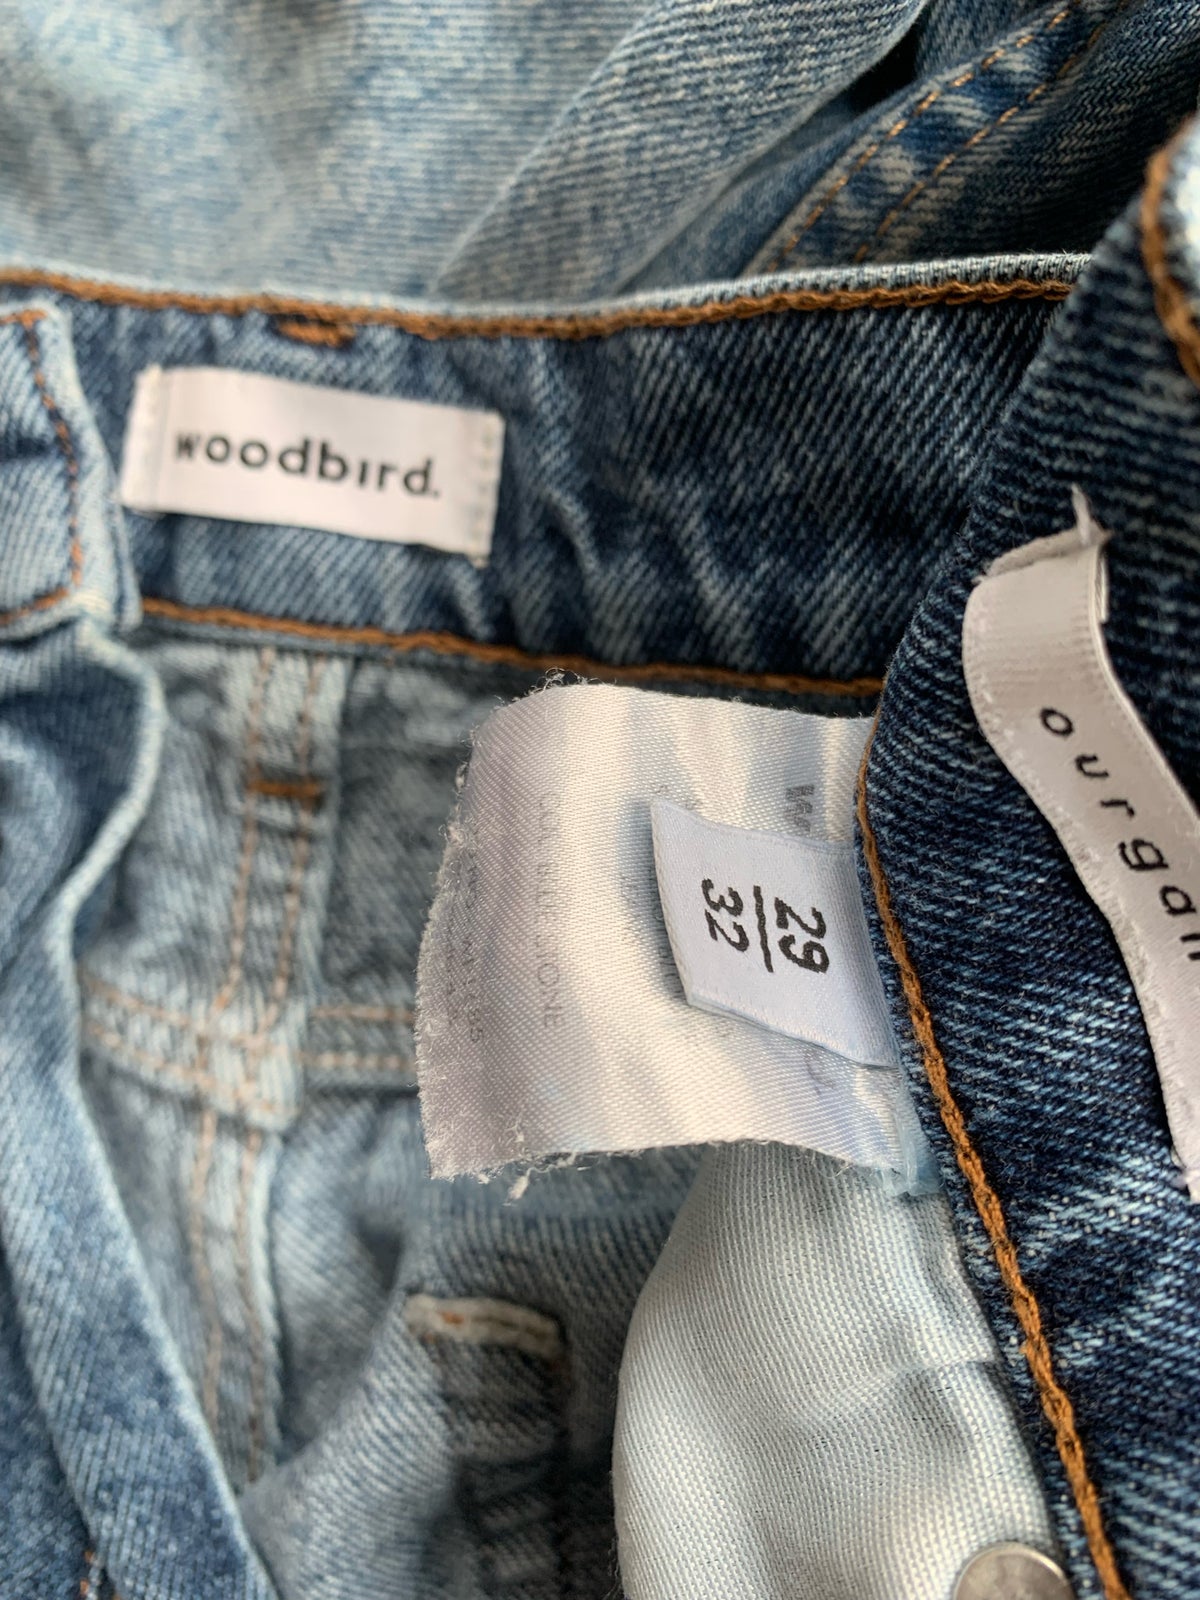 Jeans, Woodbird, Skagen